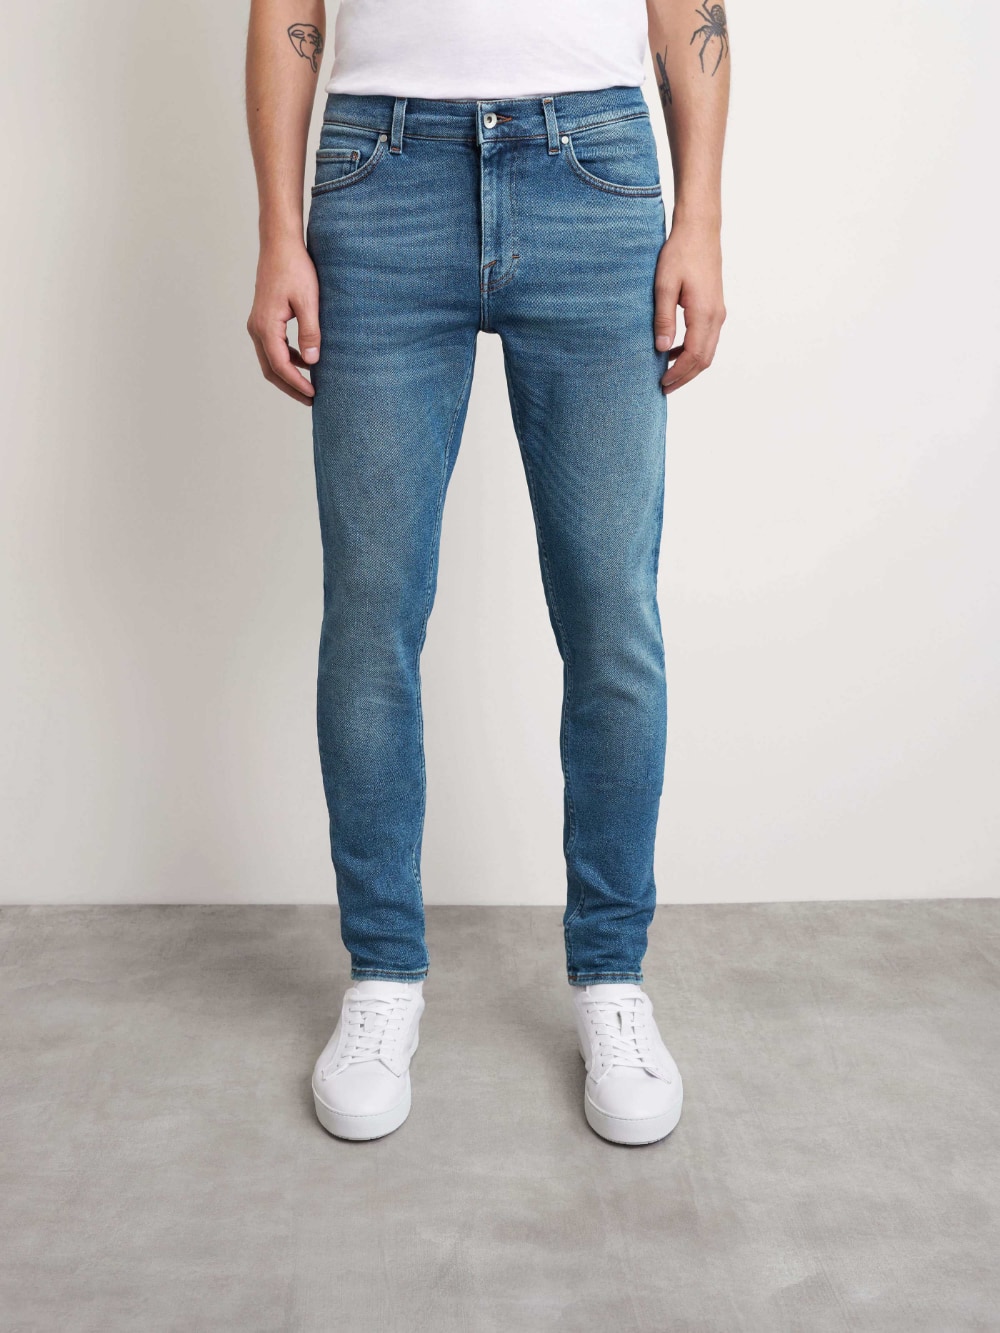 of / Jeans: Evolve Jeans Free - Dust | Gotengo Menswear